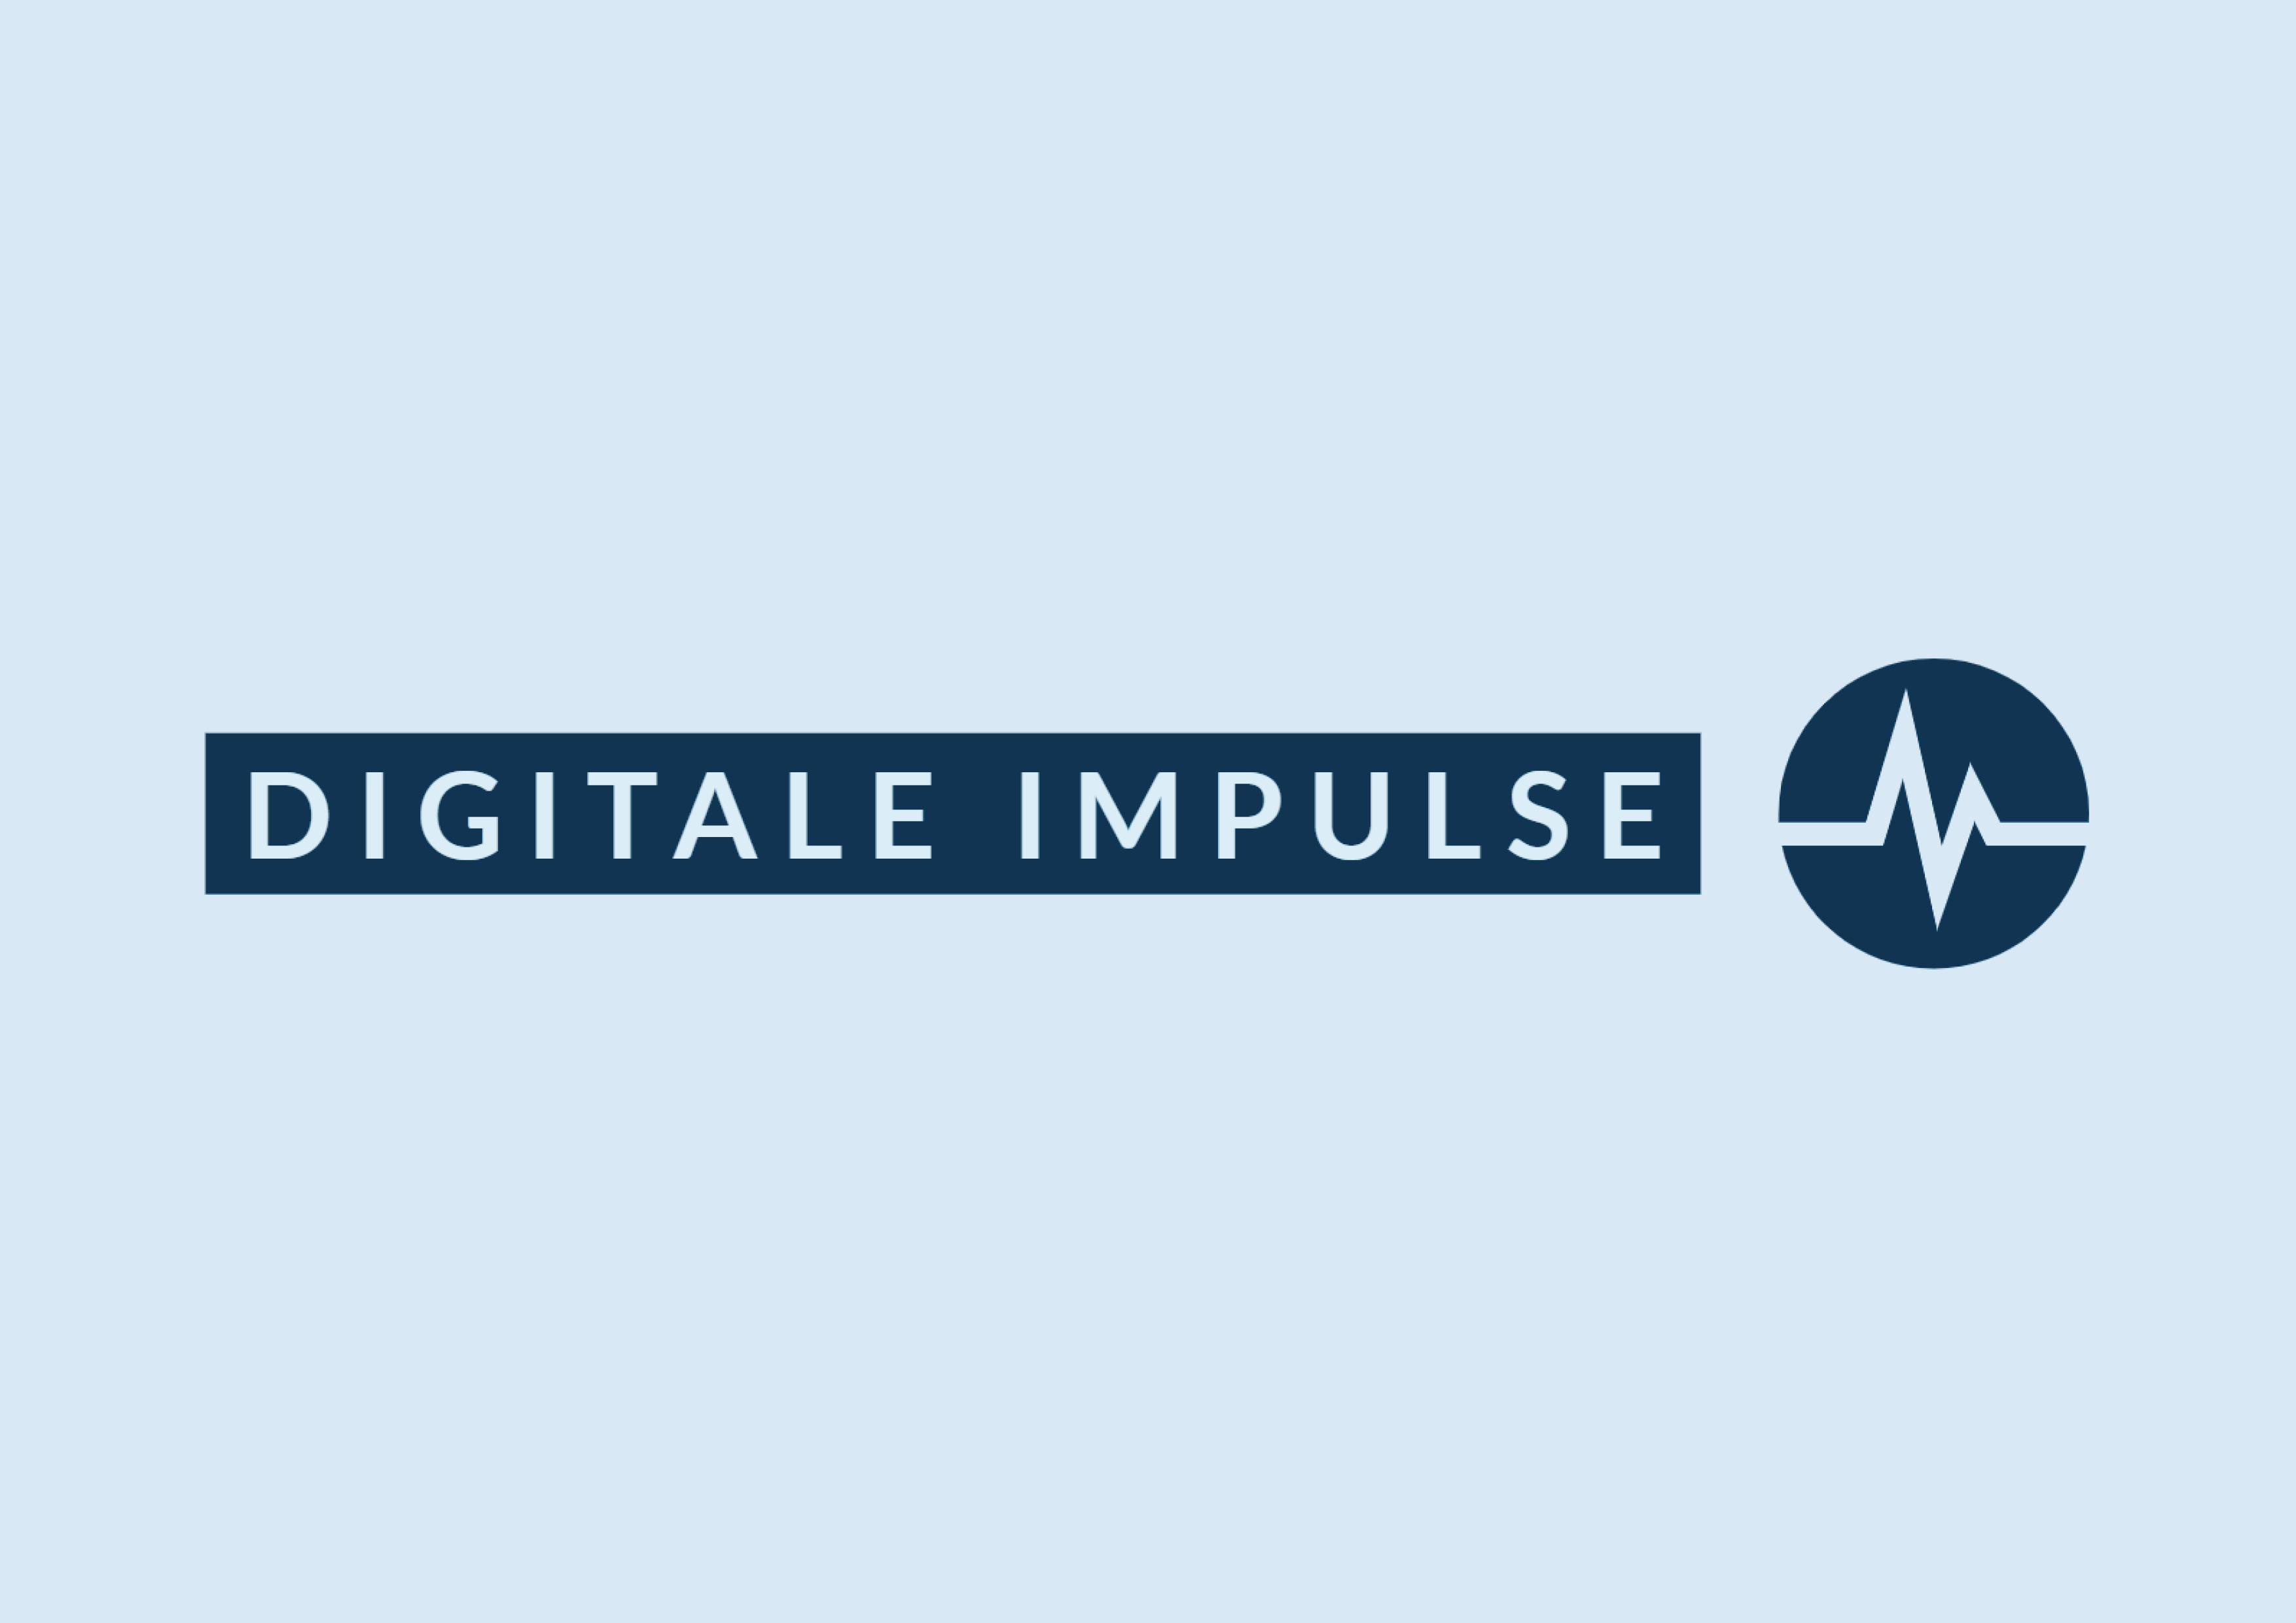 Online-Vortrag "Digitale Impulse" am 24.03.2020